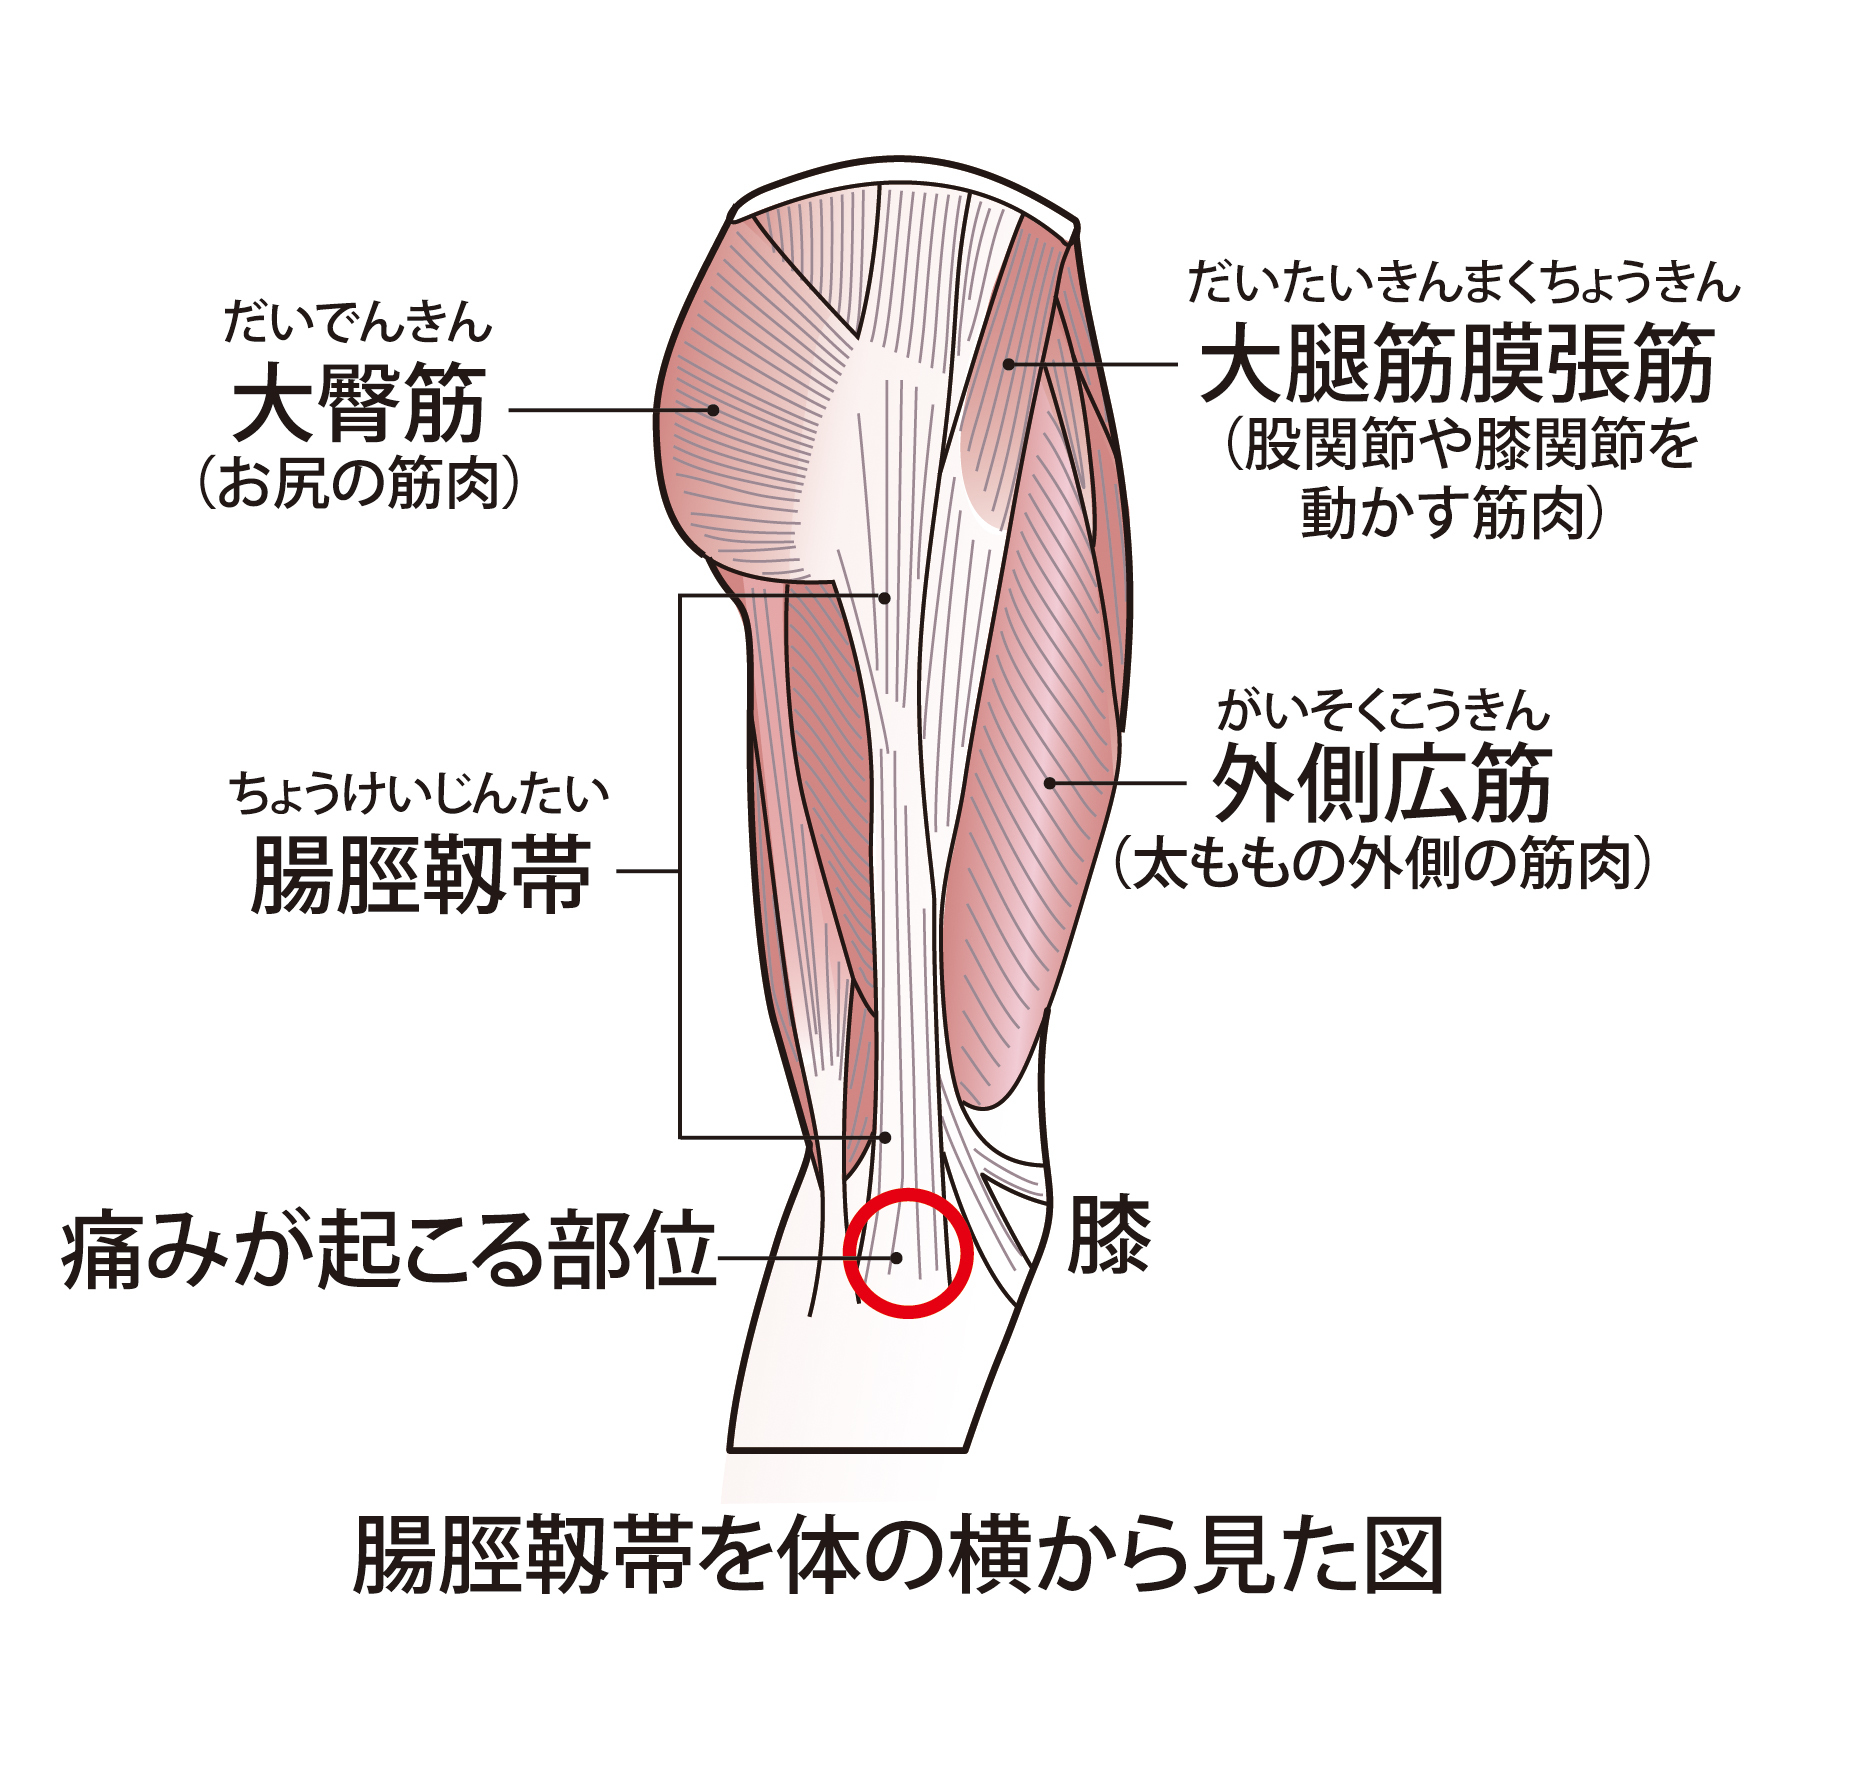 ランナー膝とも呼ばれる腸脛靭帯炎